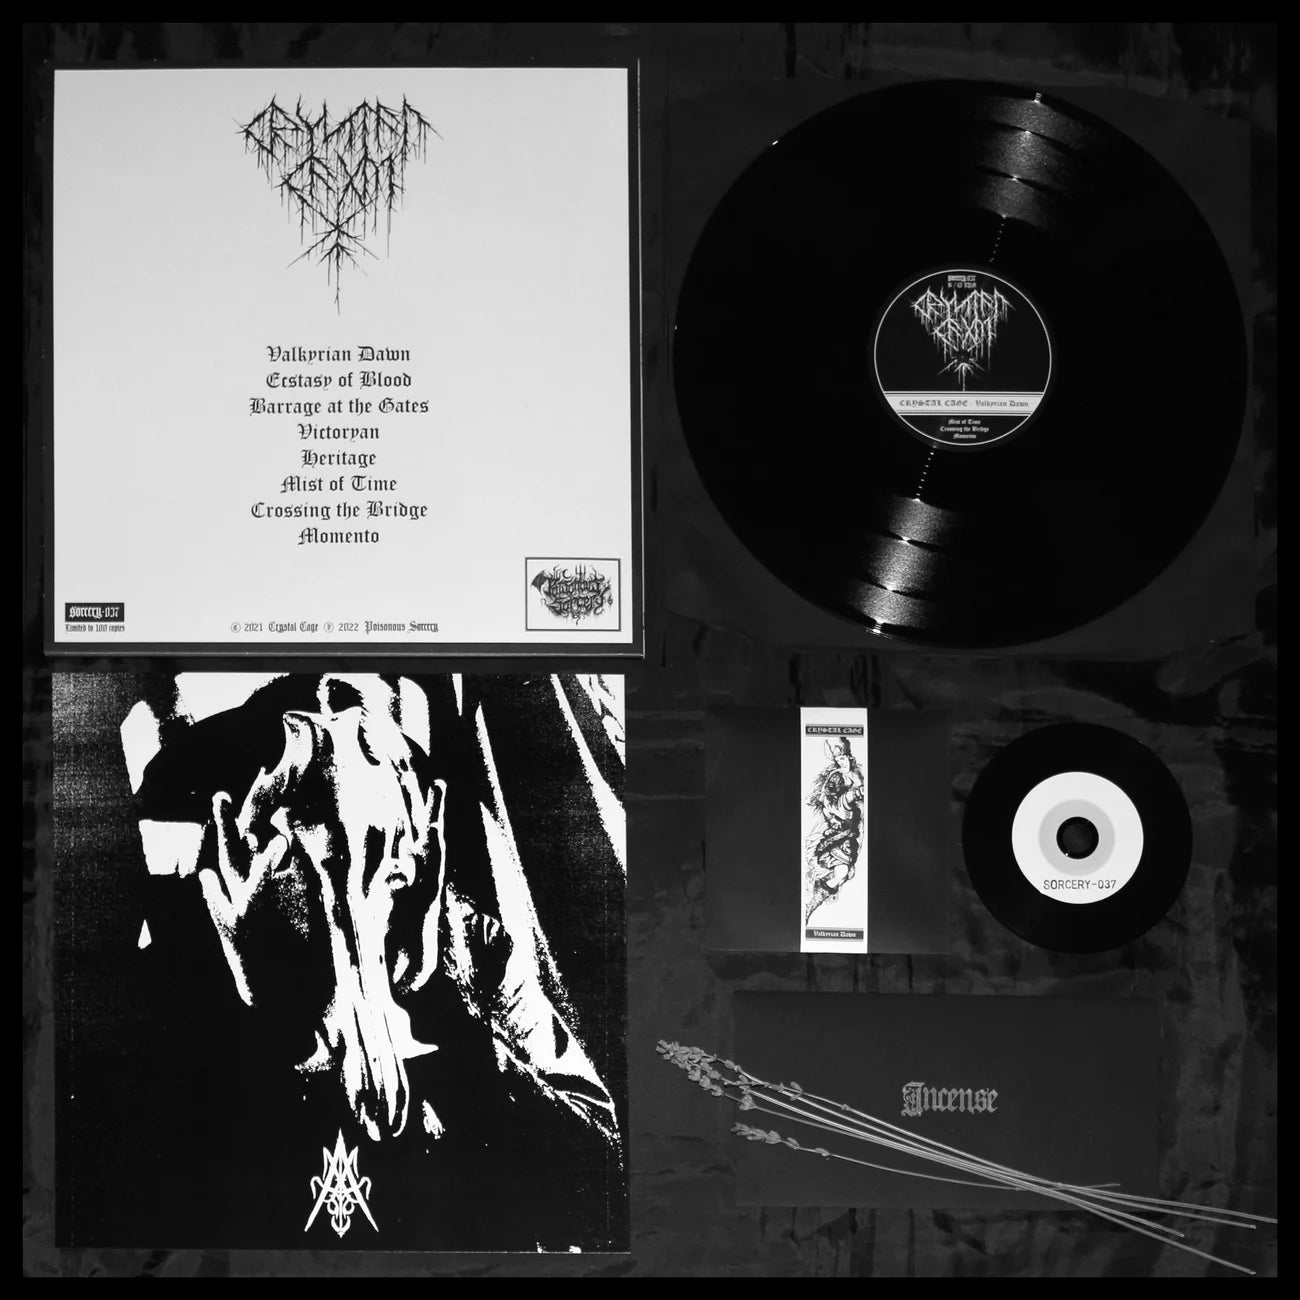 CRYSTAL CAGE “VALKYRIAN DAWN” LP [SORCERY-037]